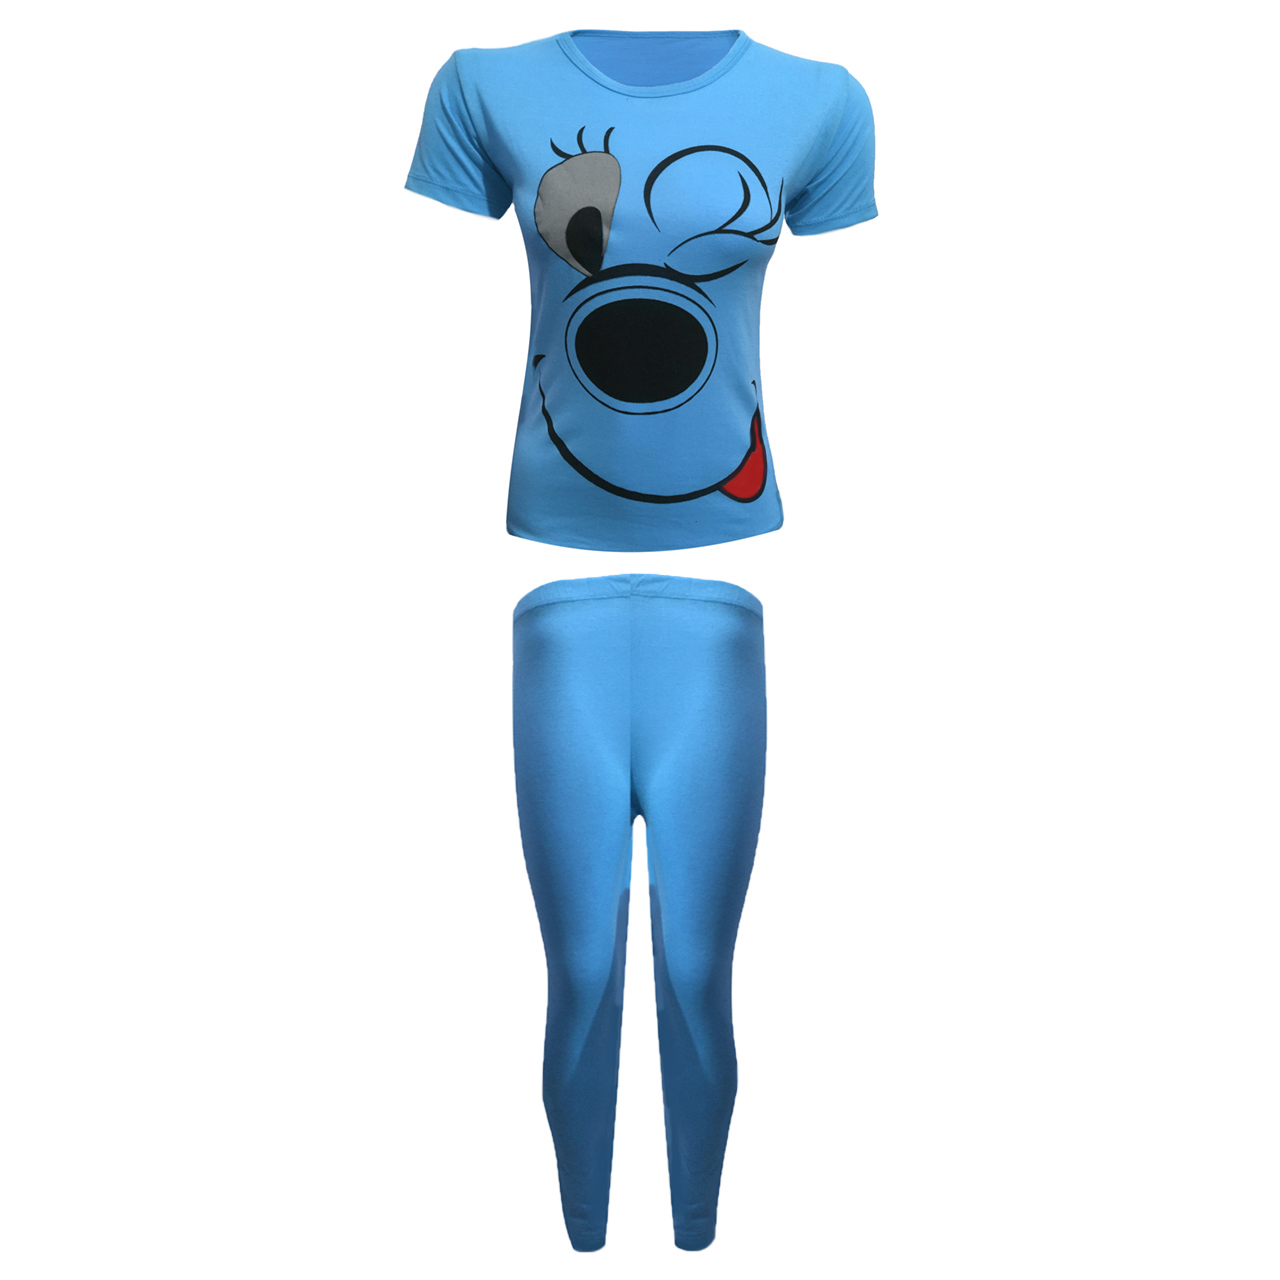 ست تی شرت آستین کوتاه و شلوار زنانه مدل Elias کد tm-167888 رنگ آبی